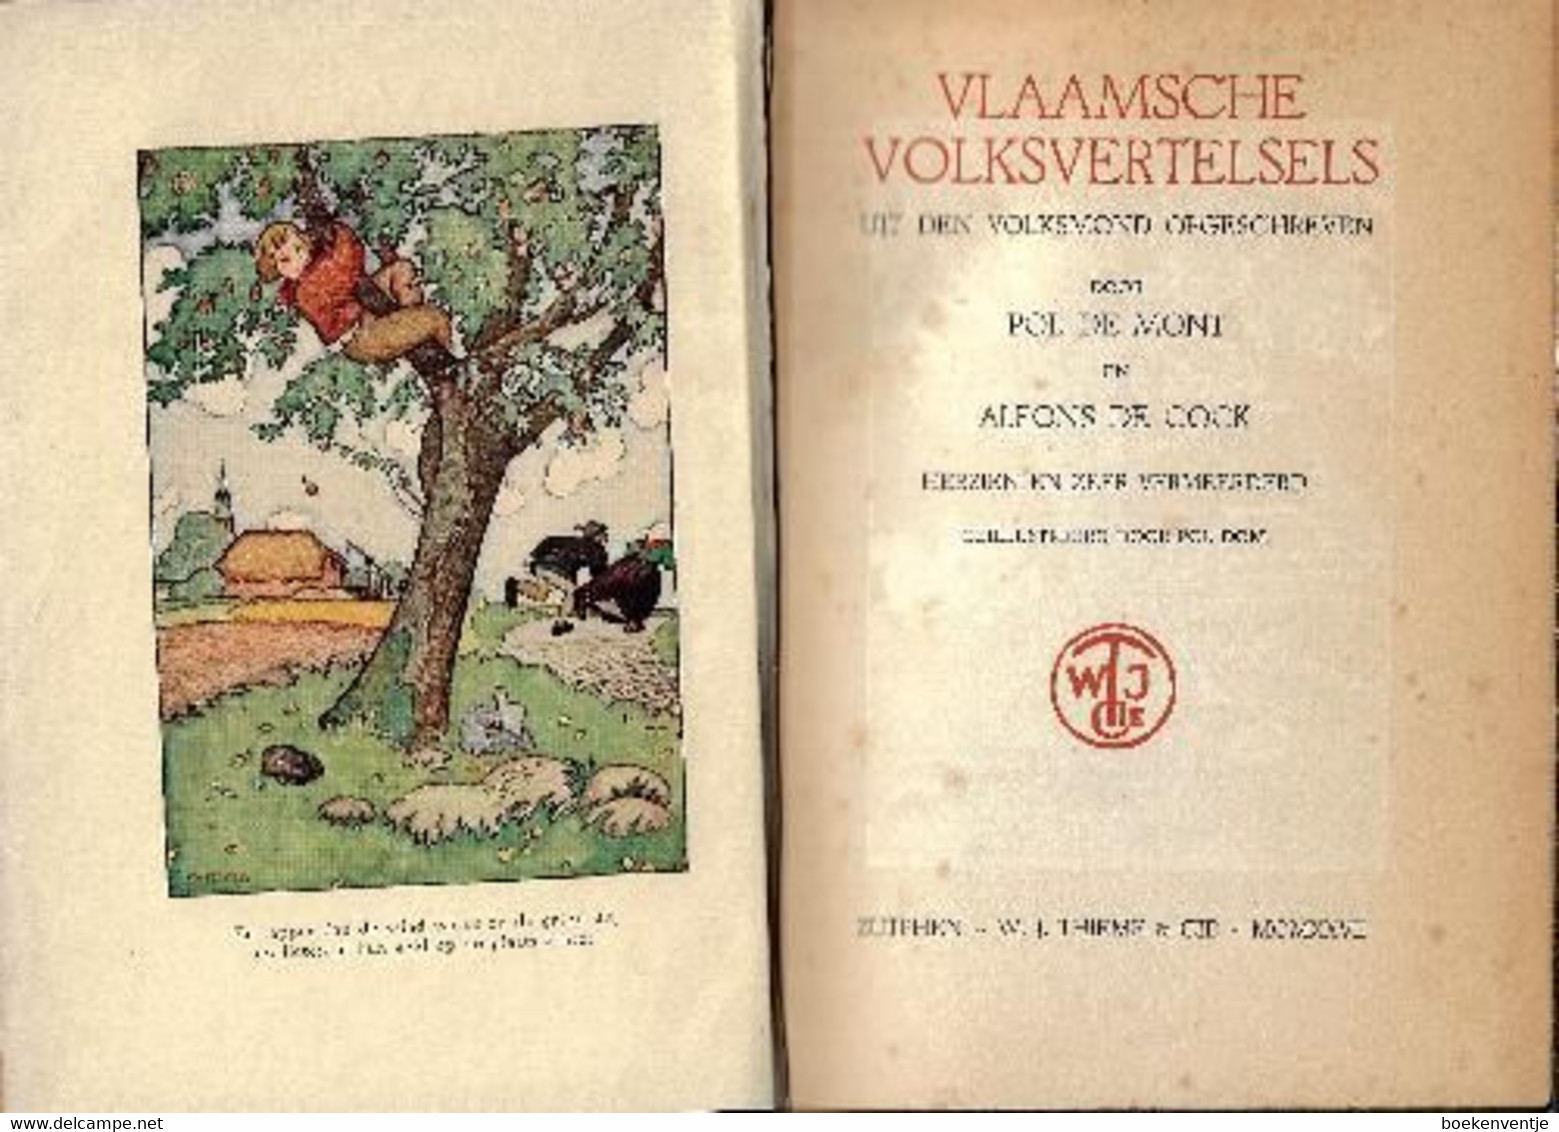 Vlaamsche Volksvertelsels Uit Den Volksmond Opgeschreven - Antique